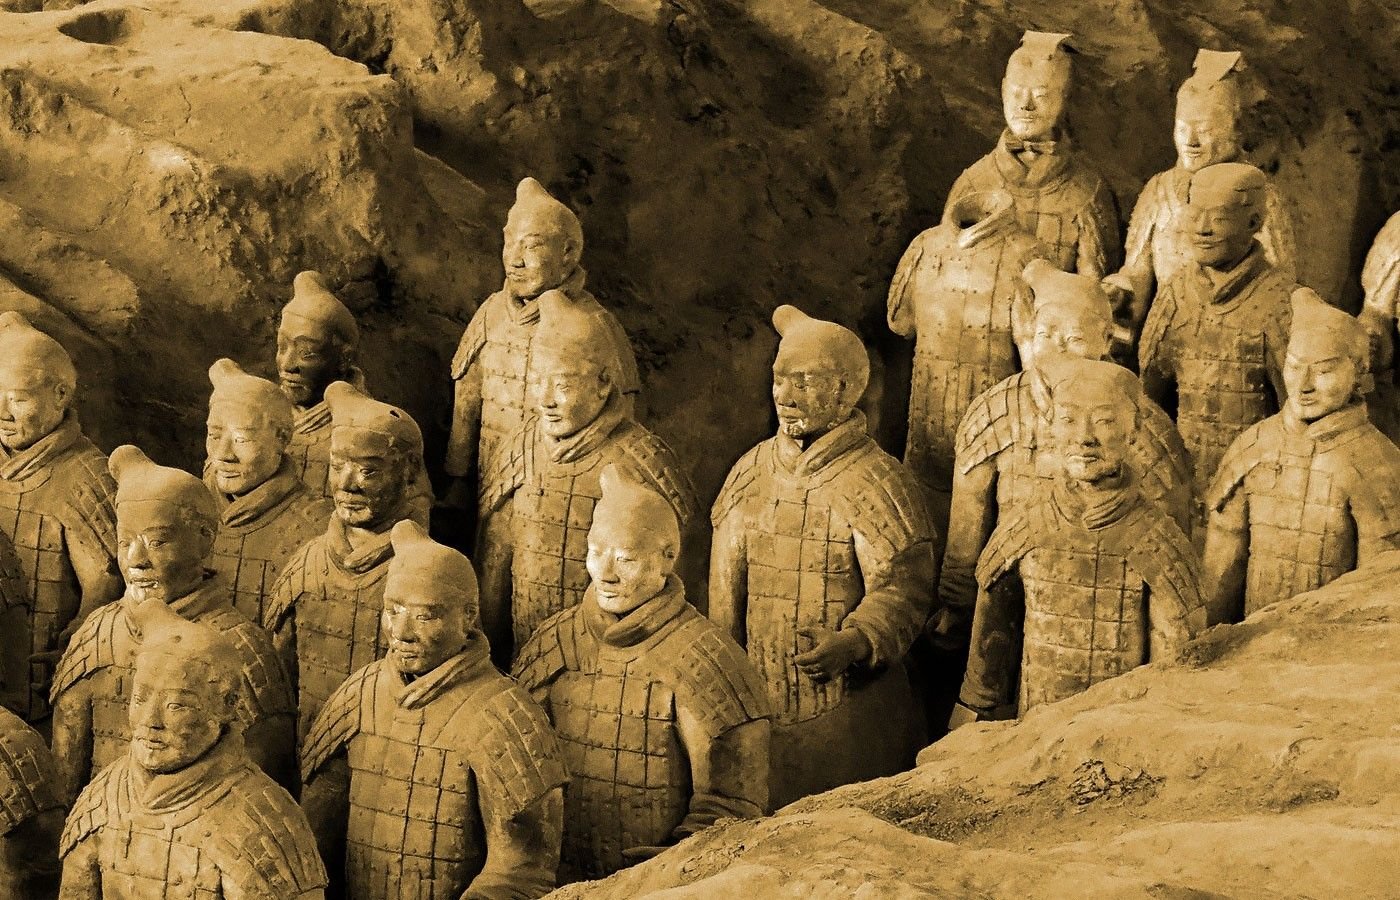 Терракотовая армия китайского императора Цинь Шихуанди. Источник: Aaron Greenwood / unsplash.com